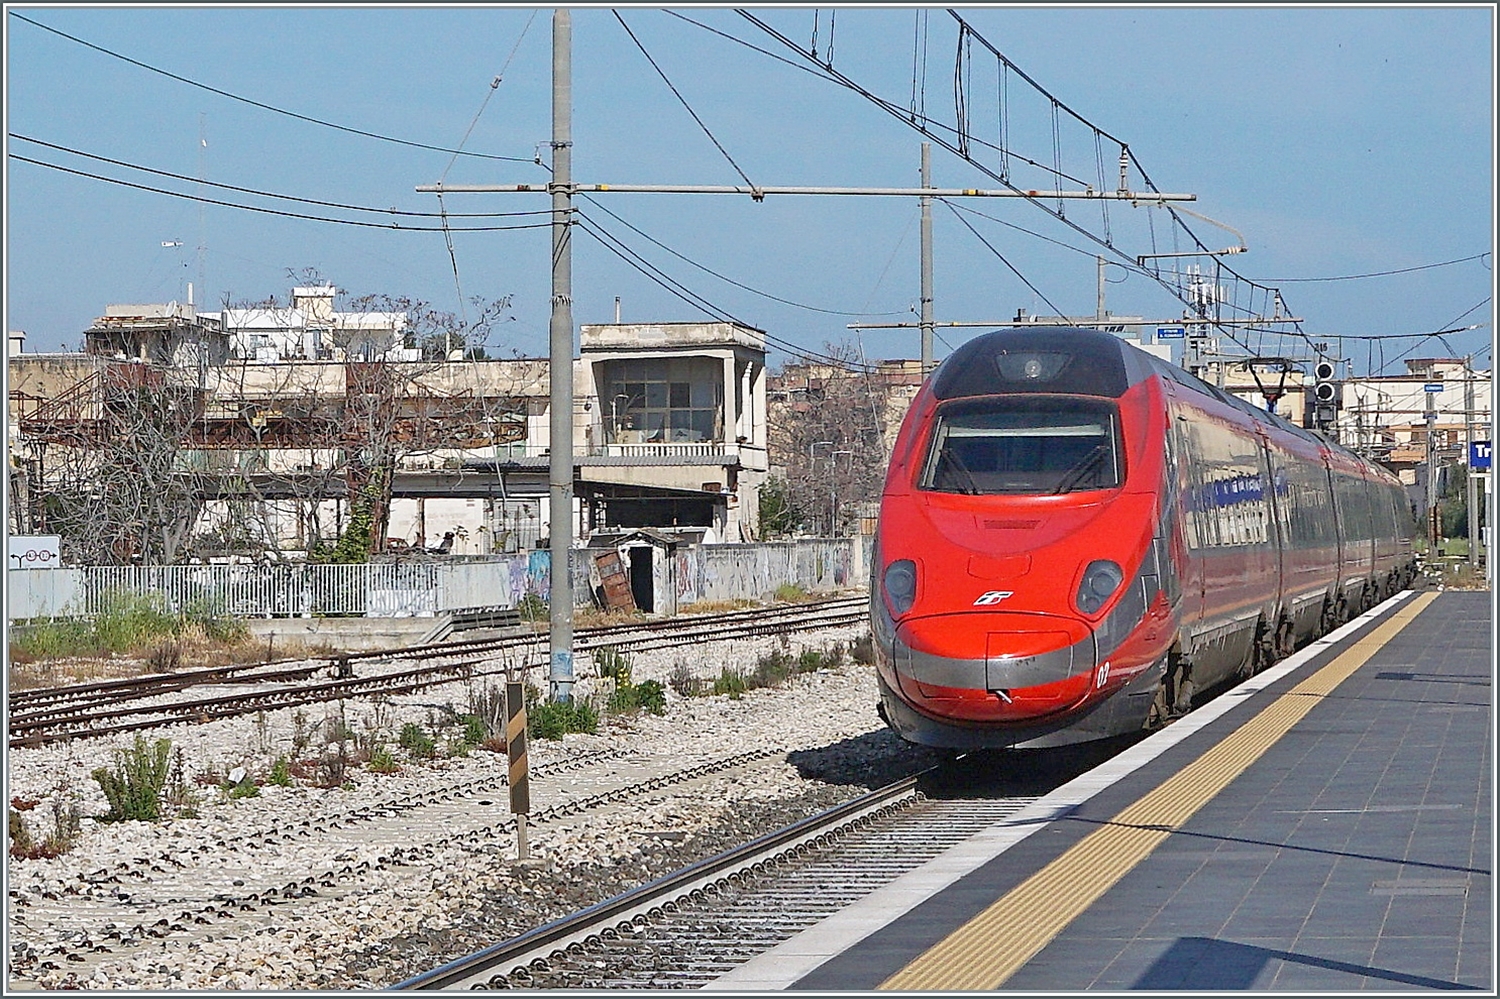 Der FS Trenitalia ETR 600 002 in der neuen Frecciarossa Farbgebung (und ein weiterer) sind als FR 8306 von Bari (ab 8:46) nach Roma Termini (an 12:55) unterwegs und fahren ziemlich schnell durch den Bahnhof von Trani. 

22. April 2023